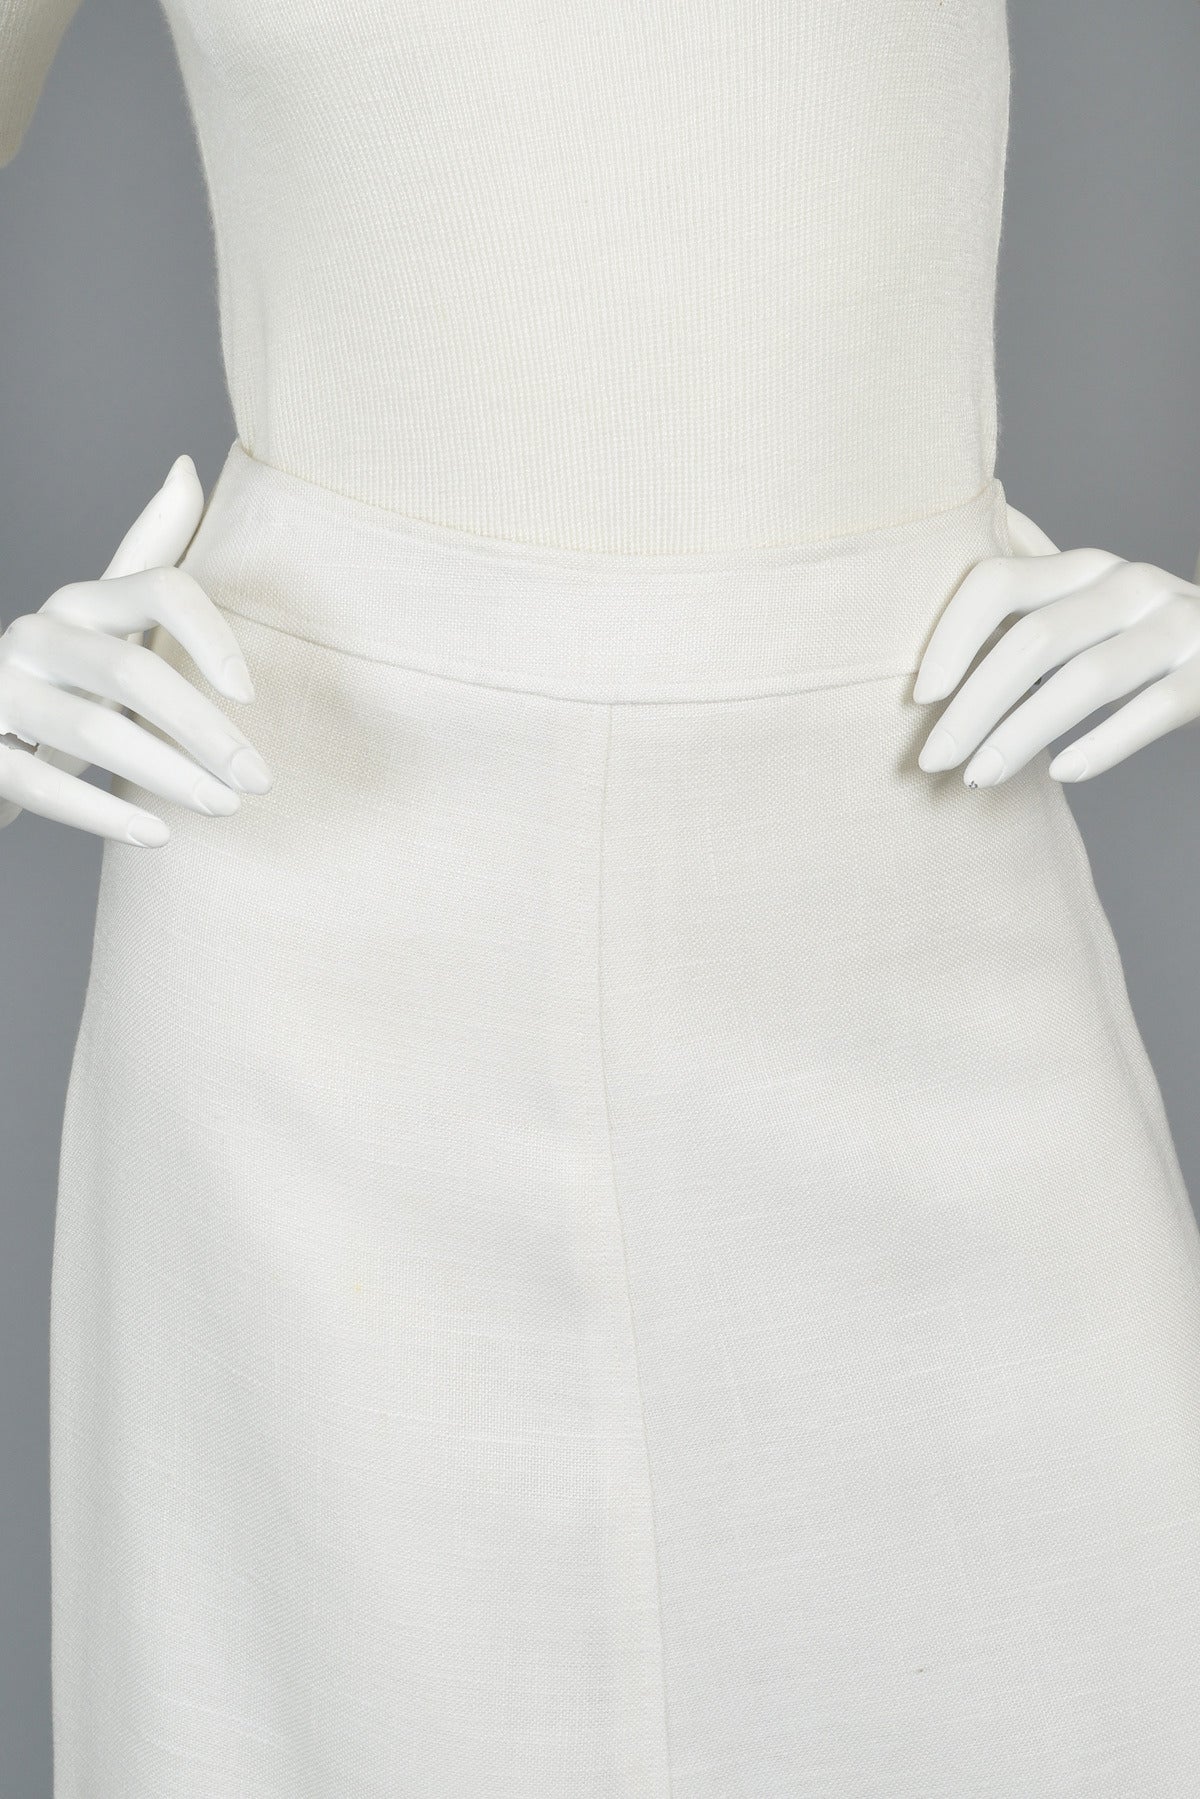 Women's Simple White 1960s/70s Courrèges Skirt